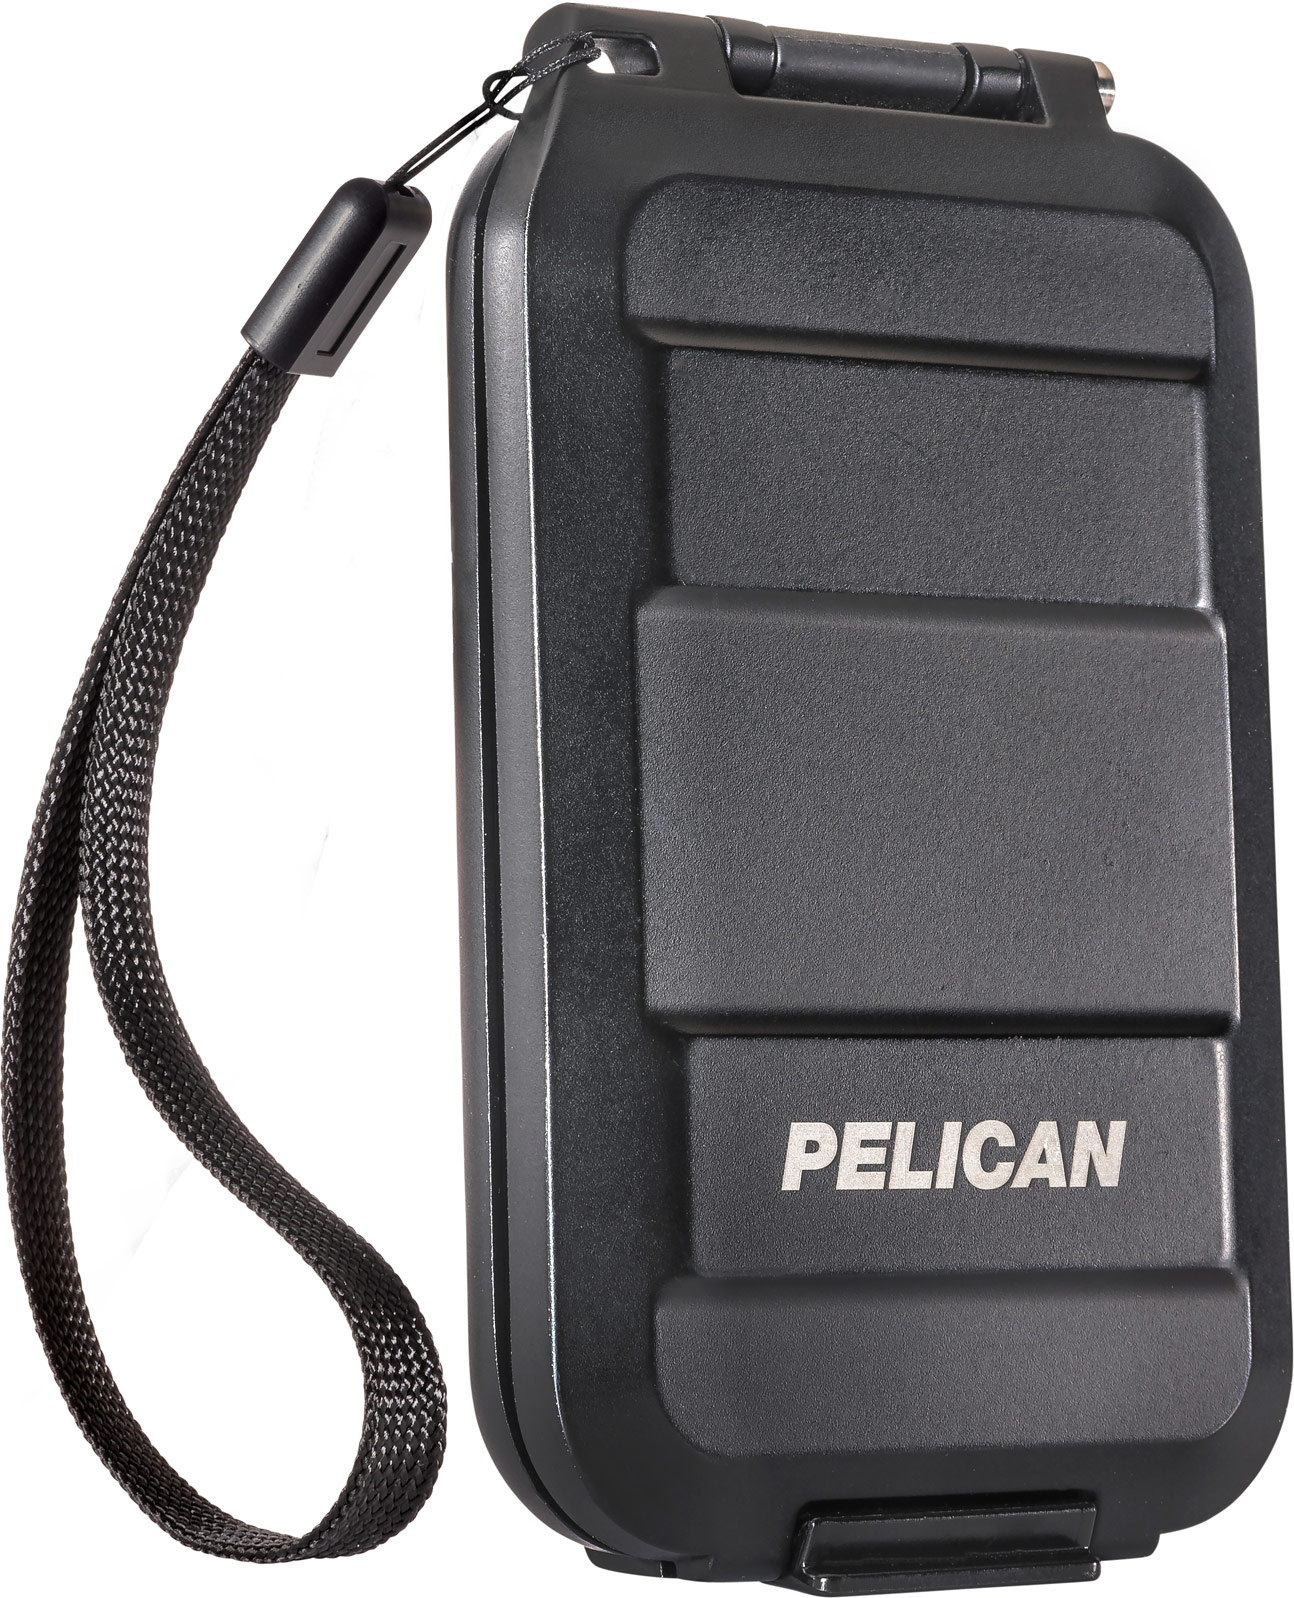 pelican g5 field wallet black strap